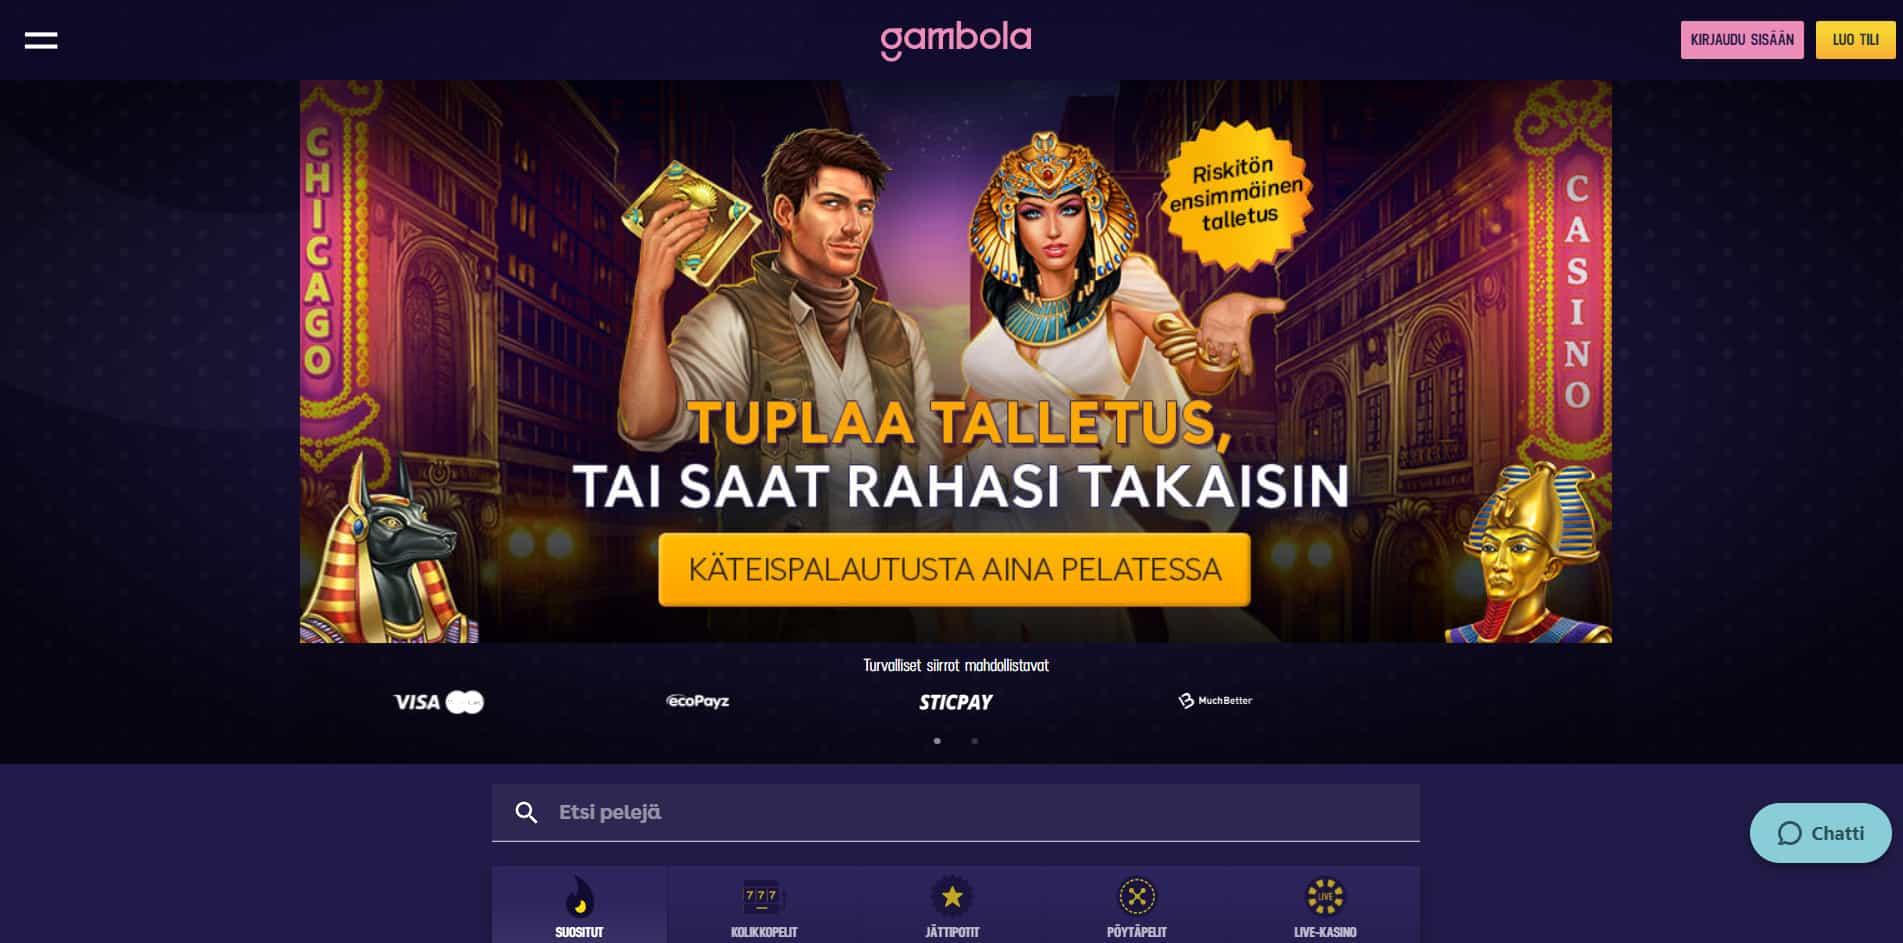 Gambola casino homepage